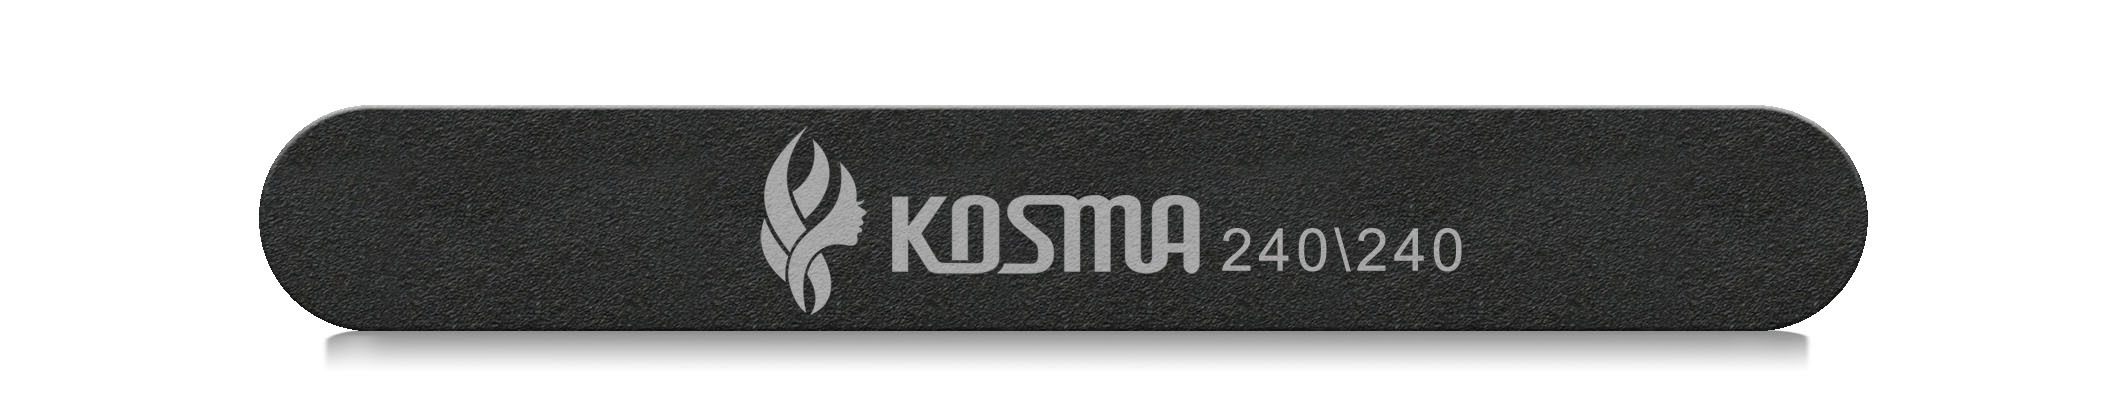 Купить Пилка KOSMA прямая маленькая черная 240/240 пластиковая основа 1 шт.